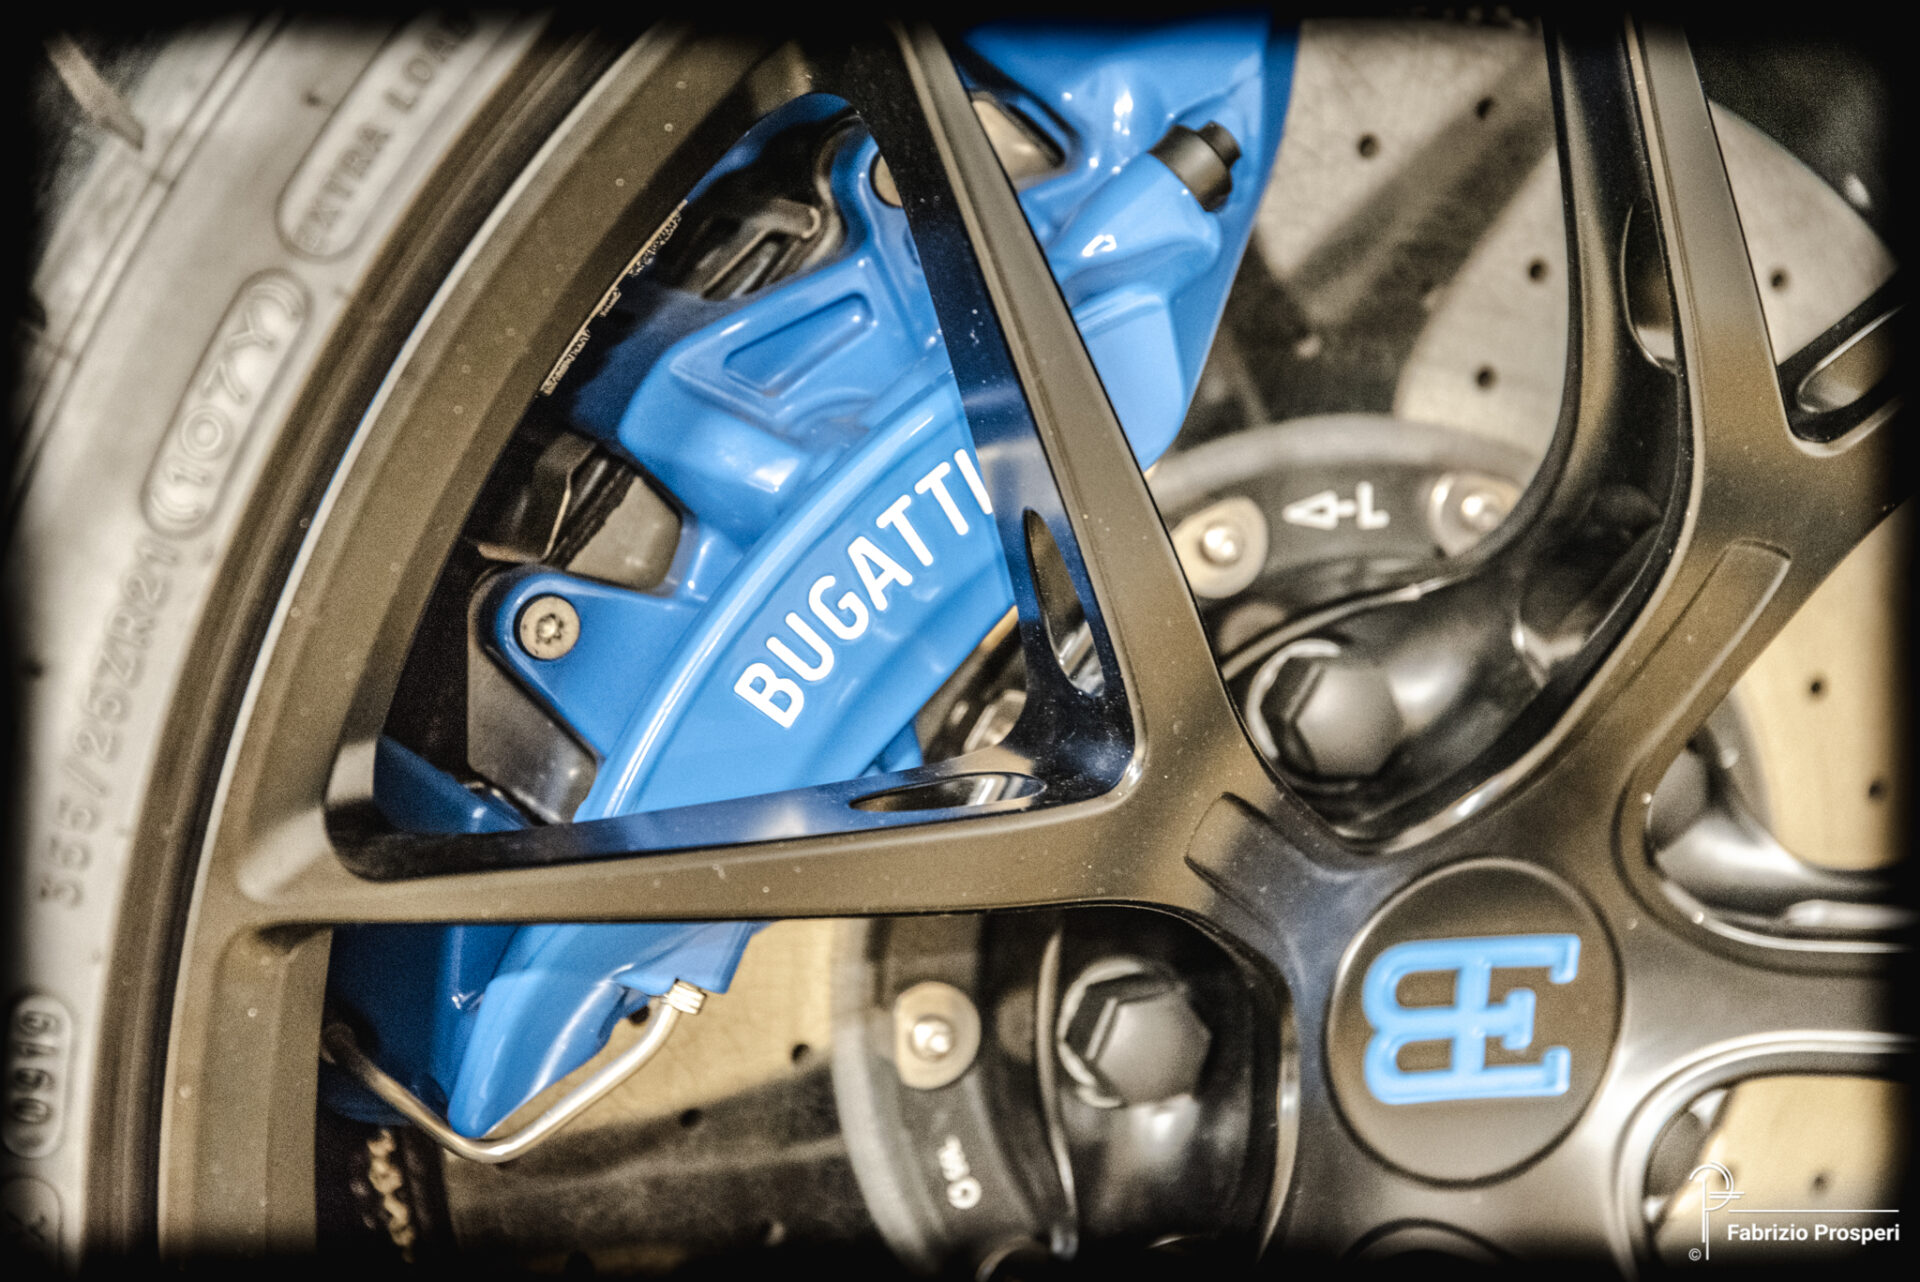 Bugatti Chiron Sport 110 ans